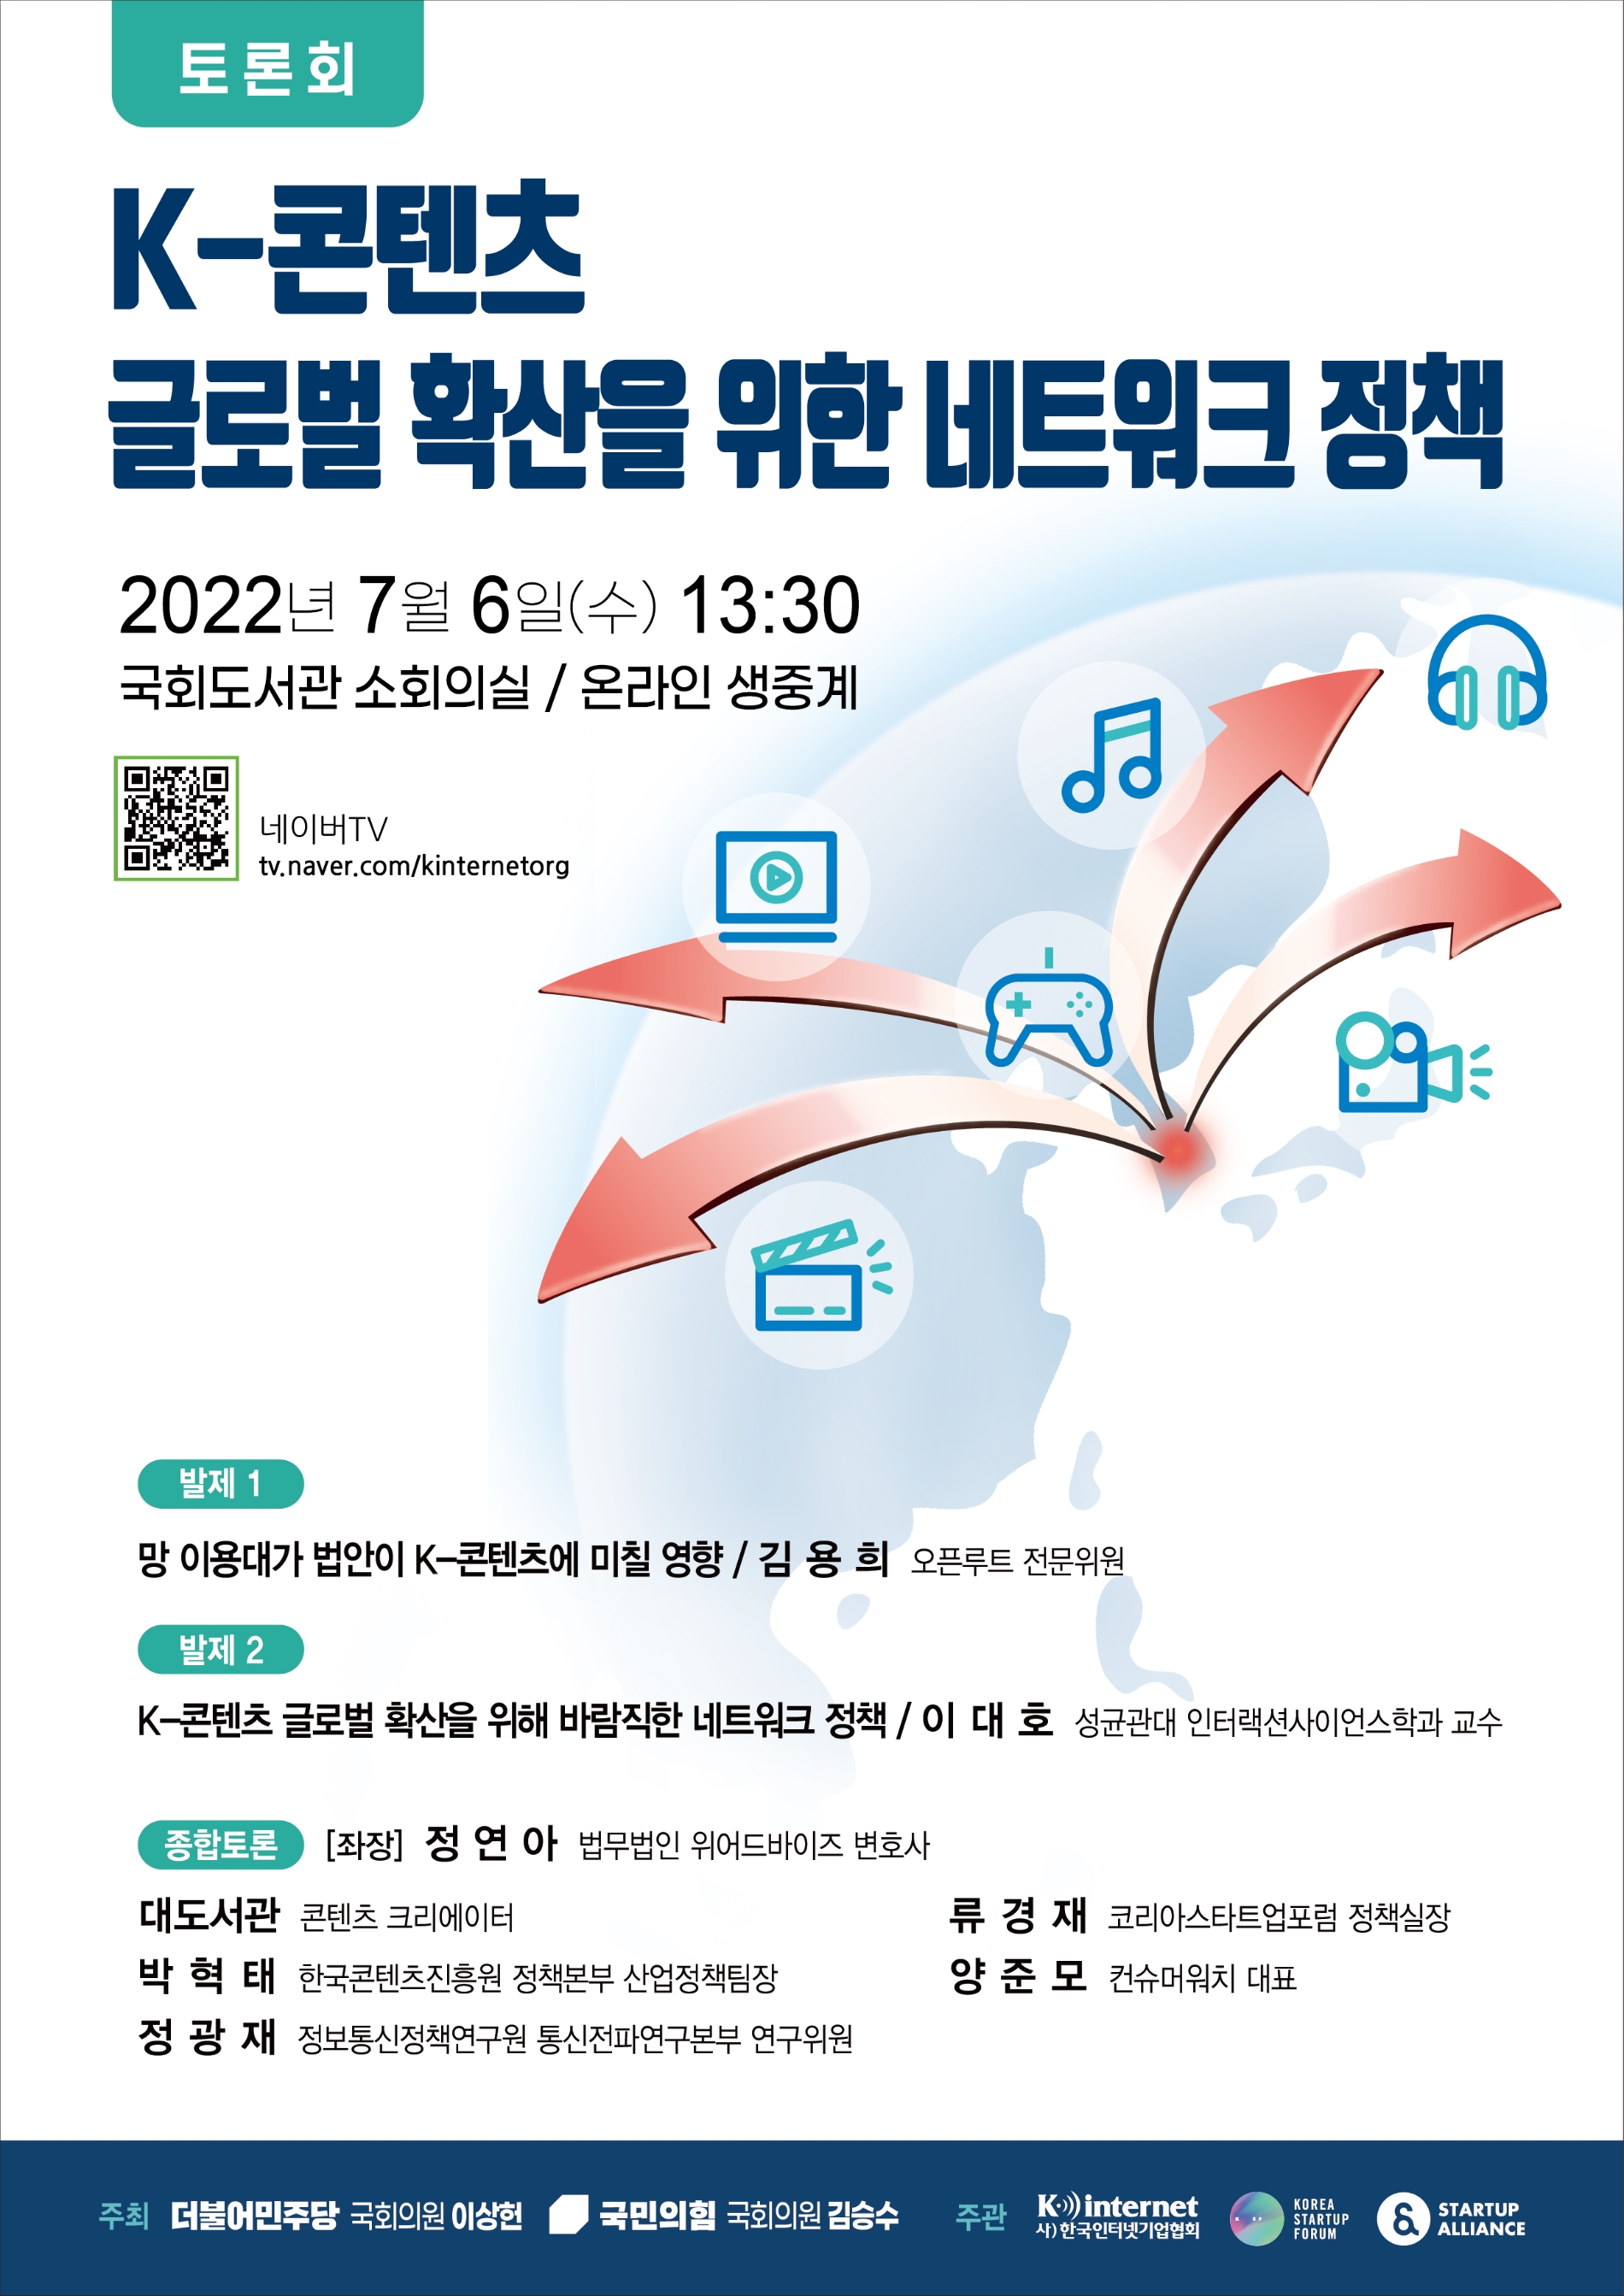 김승수 의원, ‘K-콘텐츠 글로벌 확산을 위한 네트워크 정책 토론회’ 개최